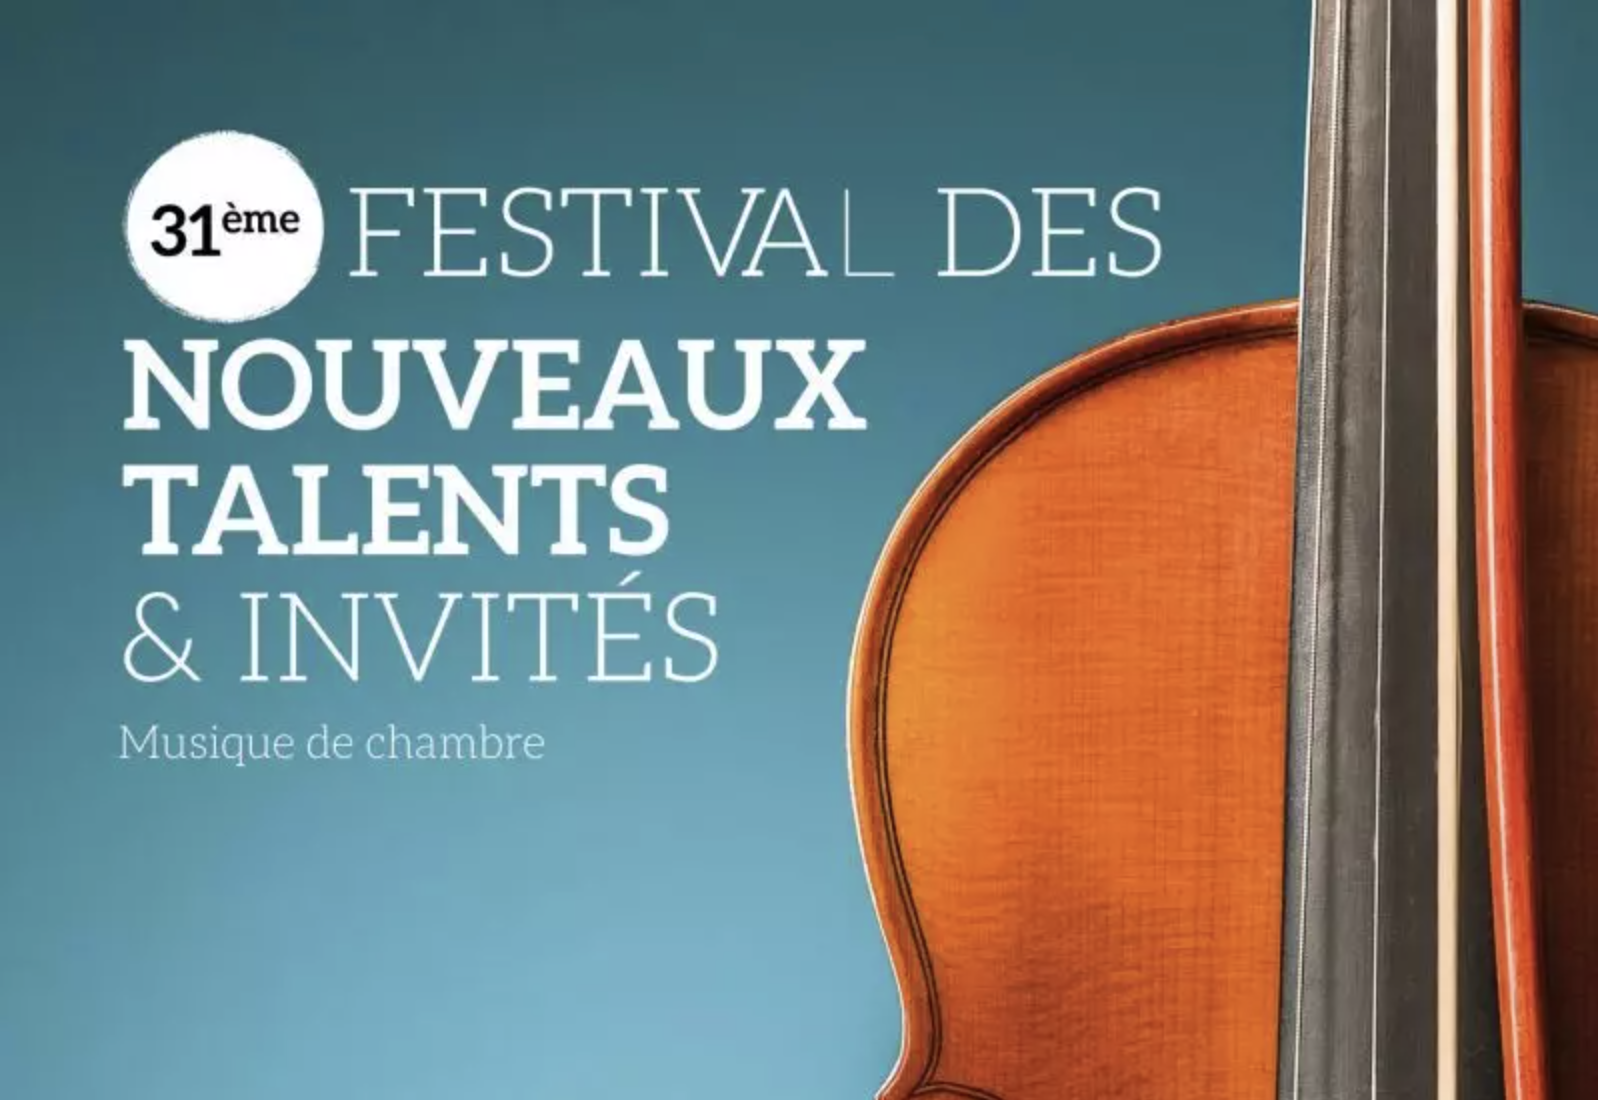 31ème Festival des Nouveaux Talents & Invités de Villers sur Mer août 2021